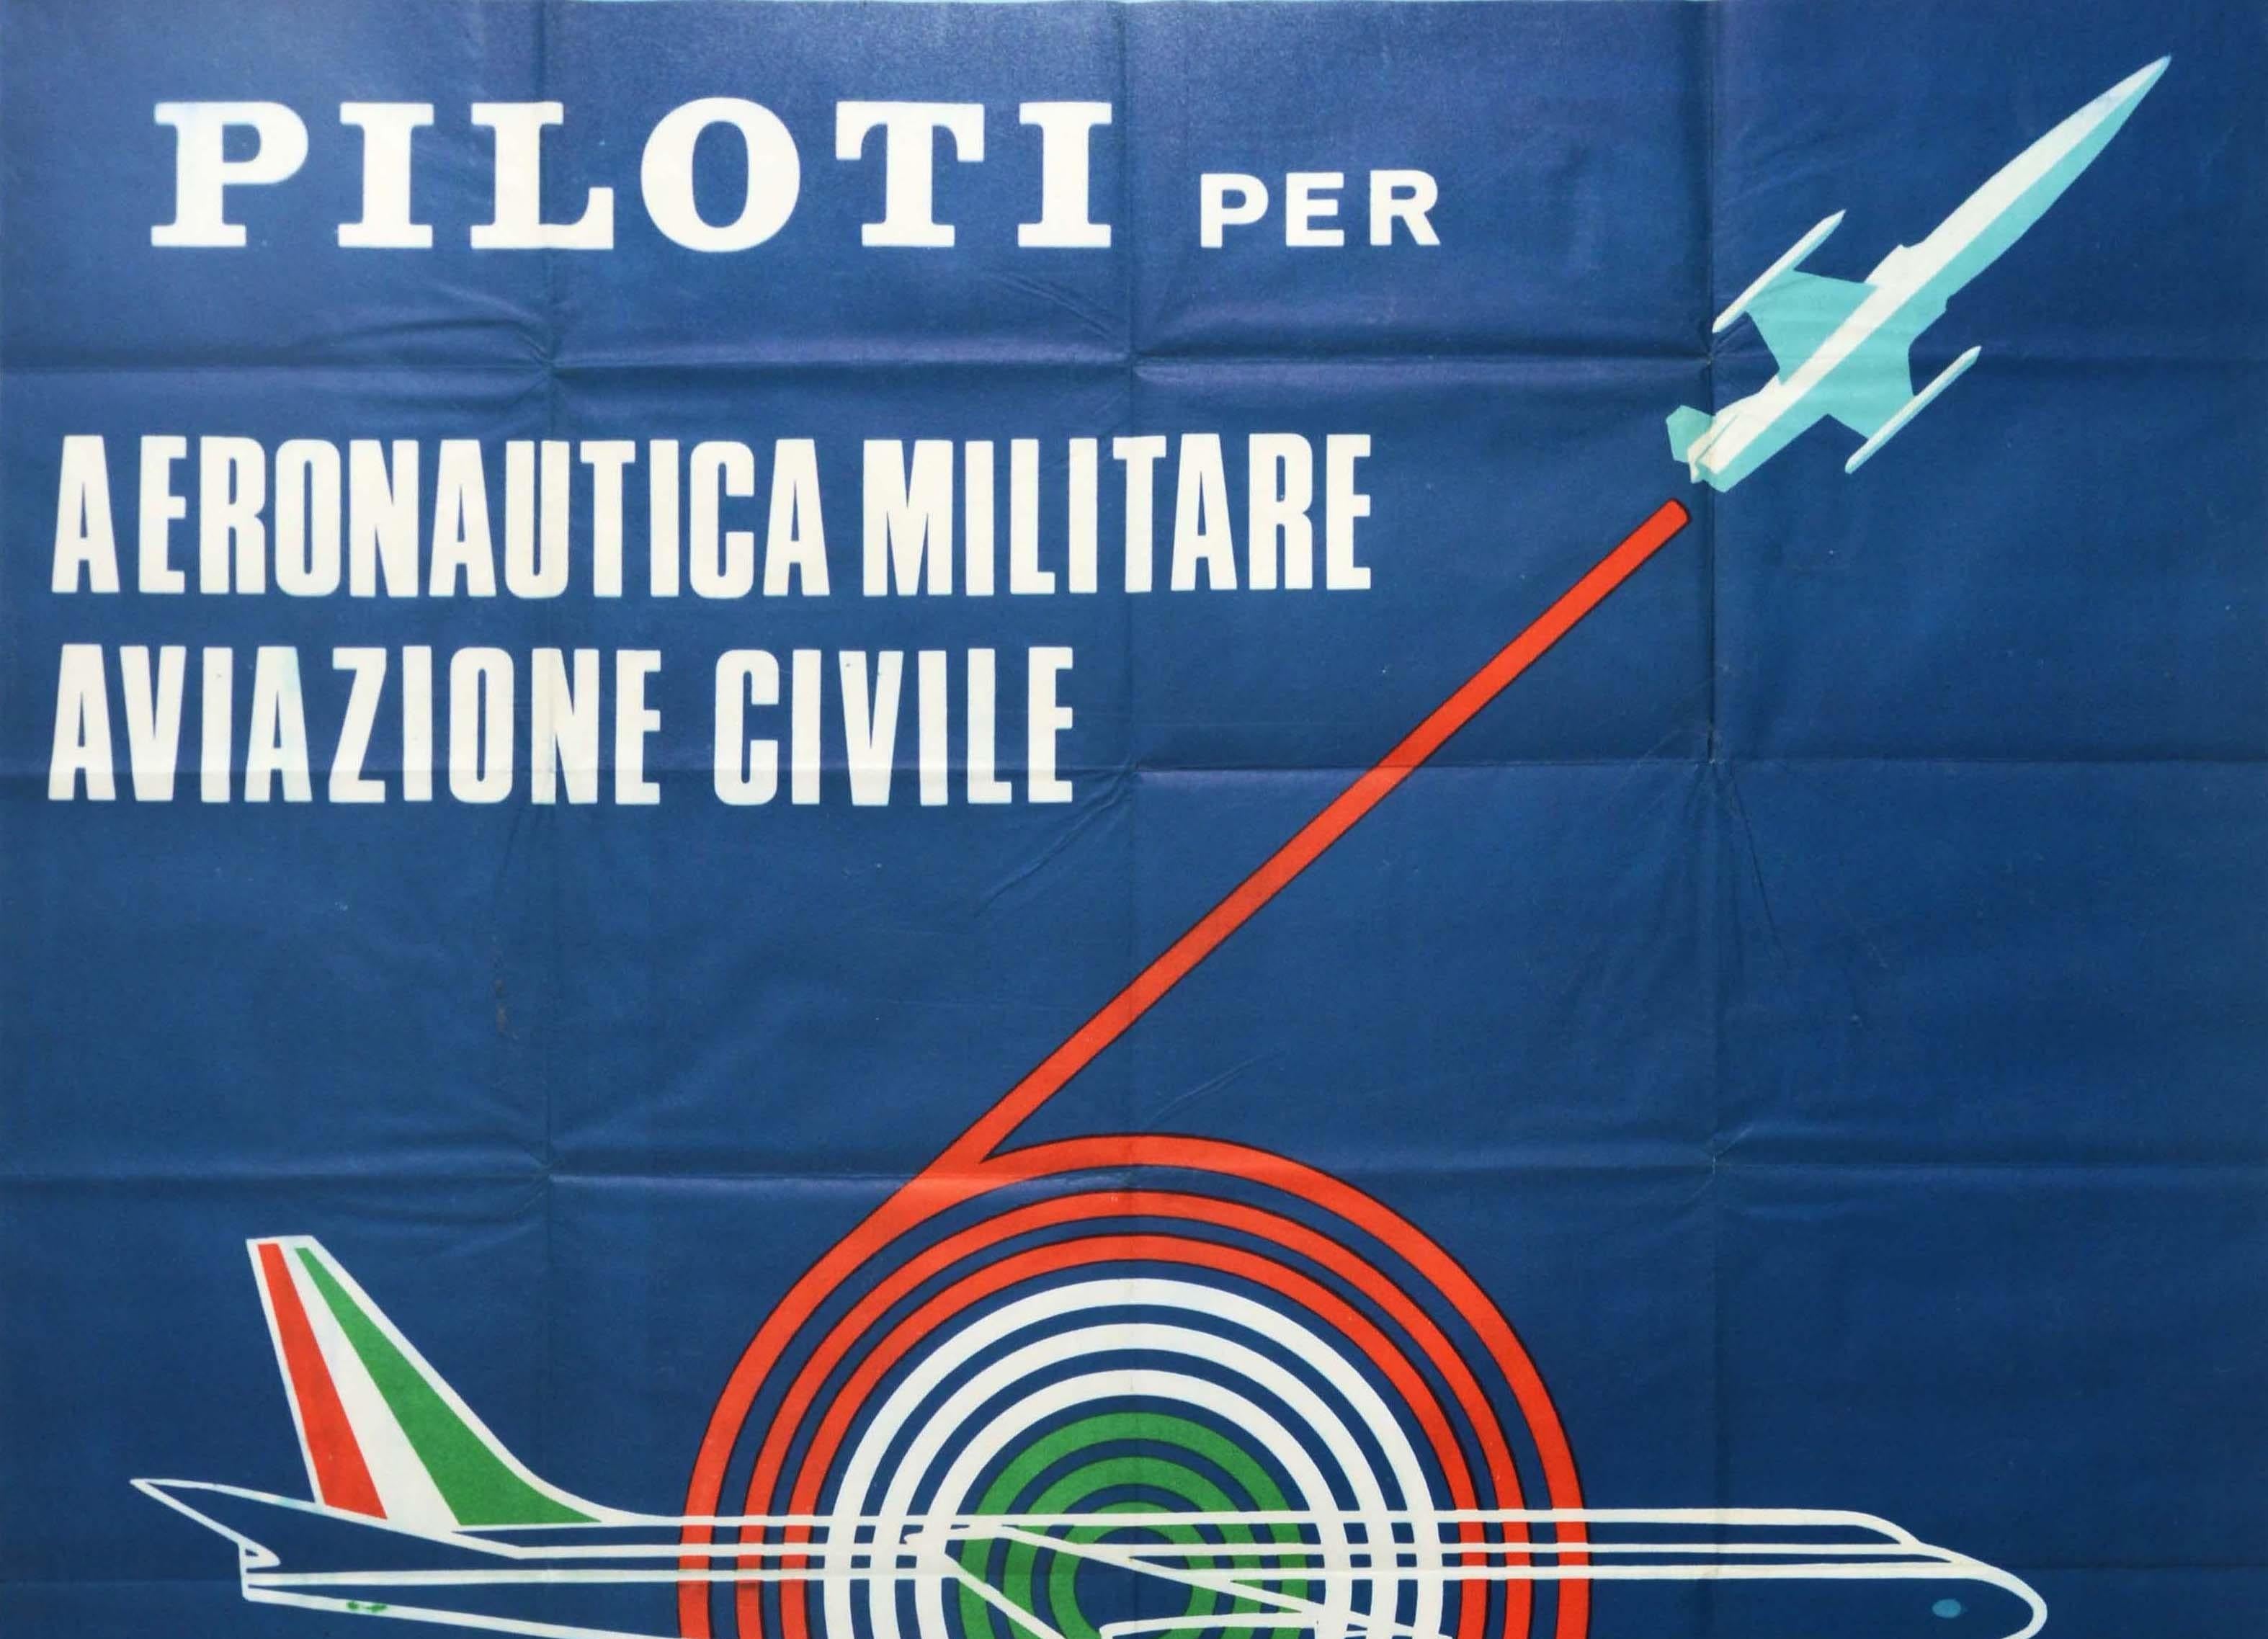 Originales Vintage-Rekrutierungsplakat für die italienische Luftwaffe und die zivile Luftfahrt - Piloti per Aeronautica Aviazione Civile - mit einem großartigen grafischen Entwurf, der den weißen Umriss eines Passagierflugzeugs zeigt, das vor einer